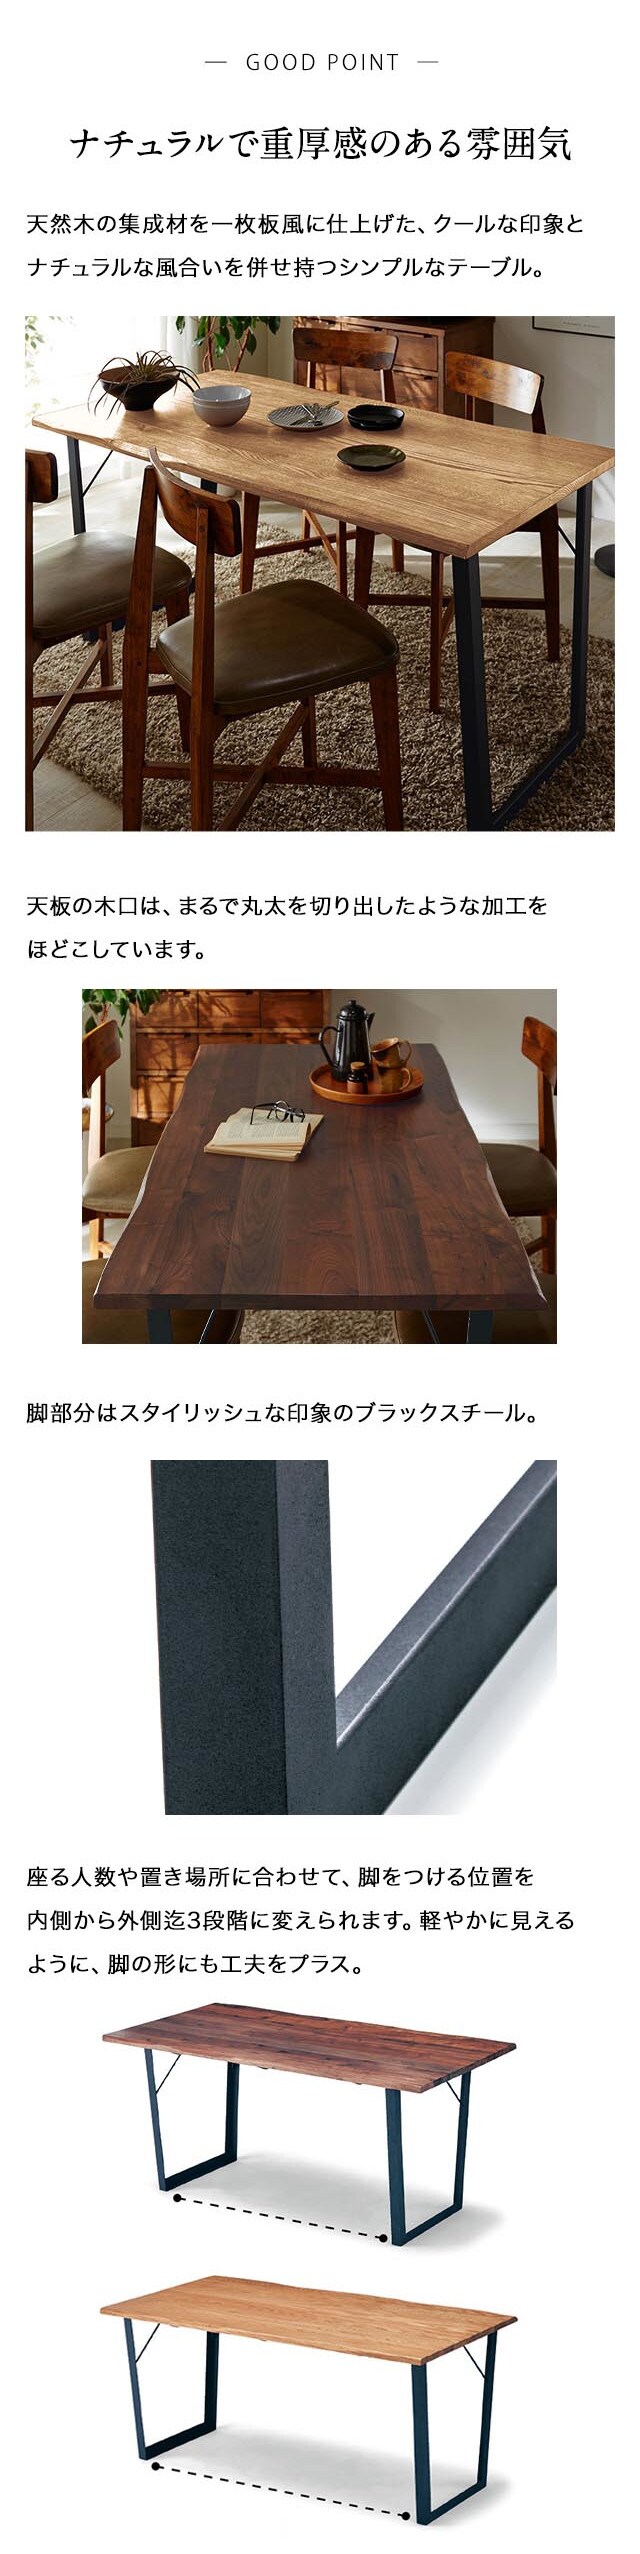 一枚板テーブル ②